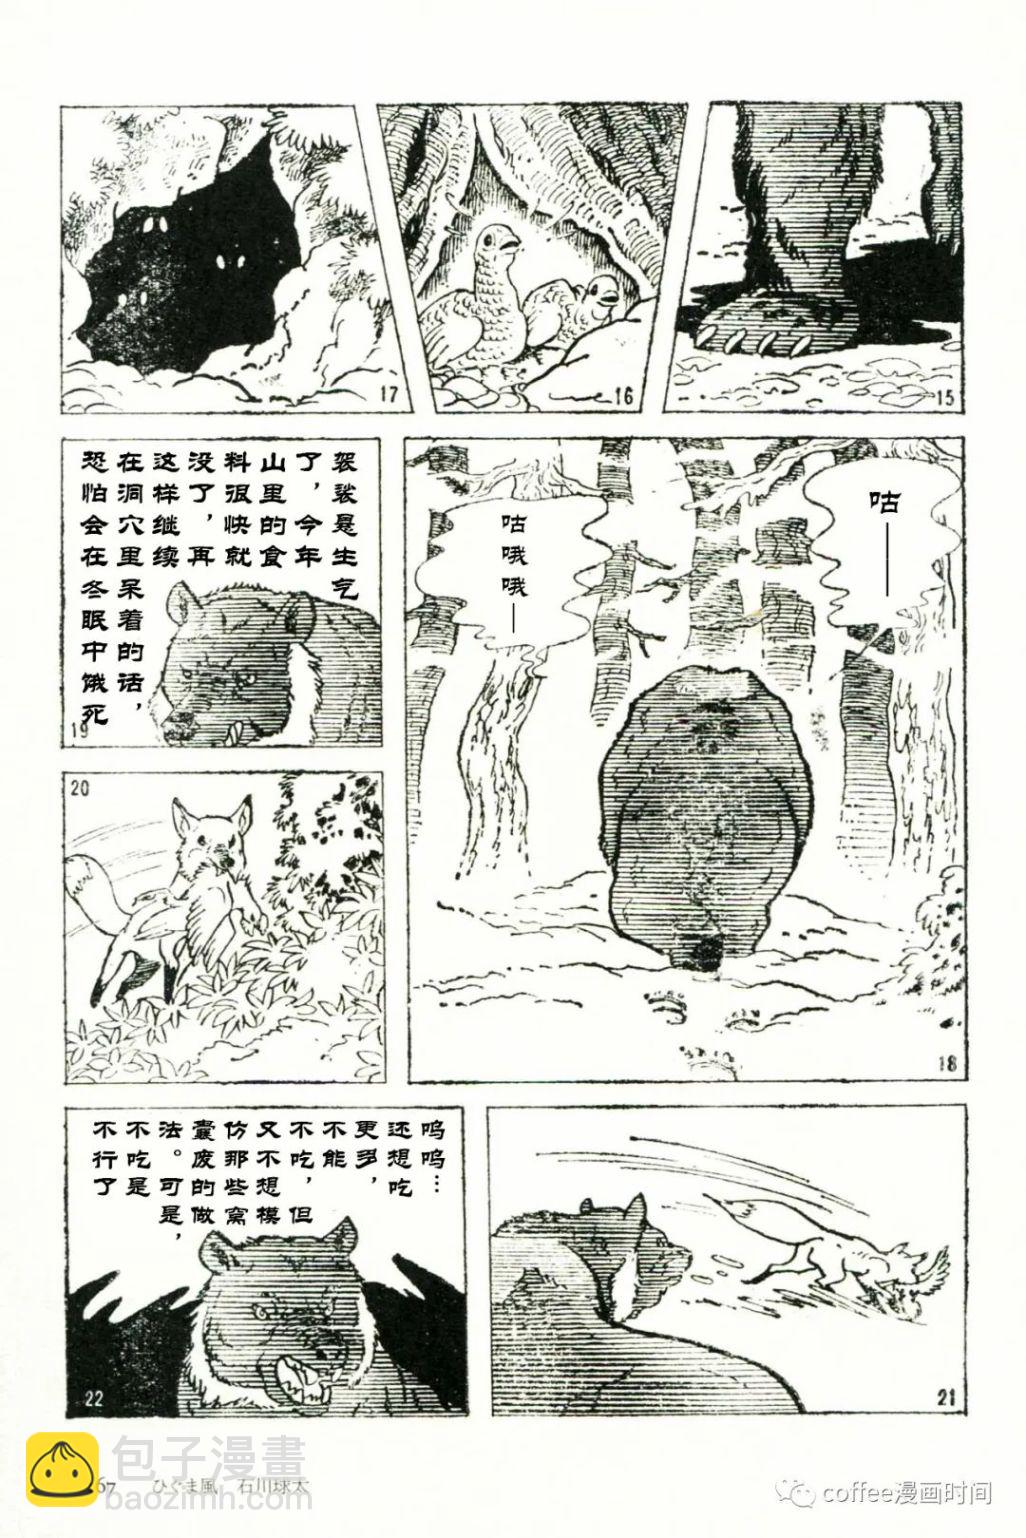 日本短篇漫畫傑作集 - 石川球太《棕熊風》 - 5